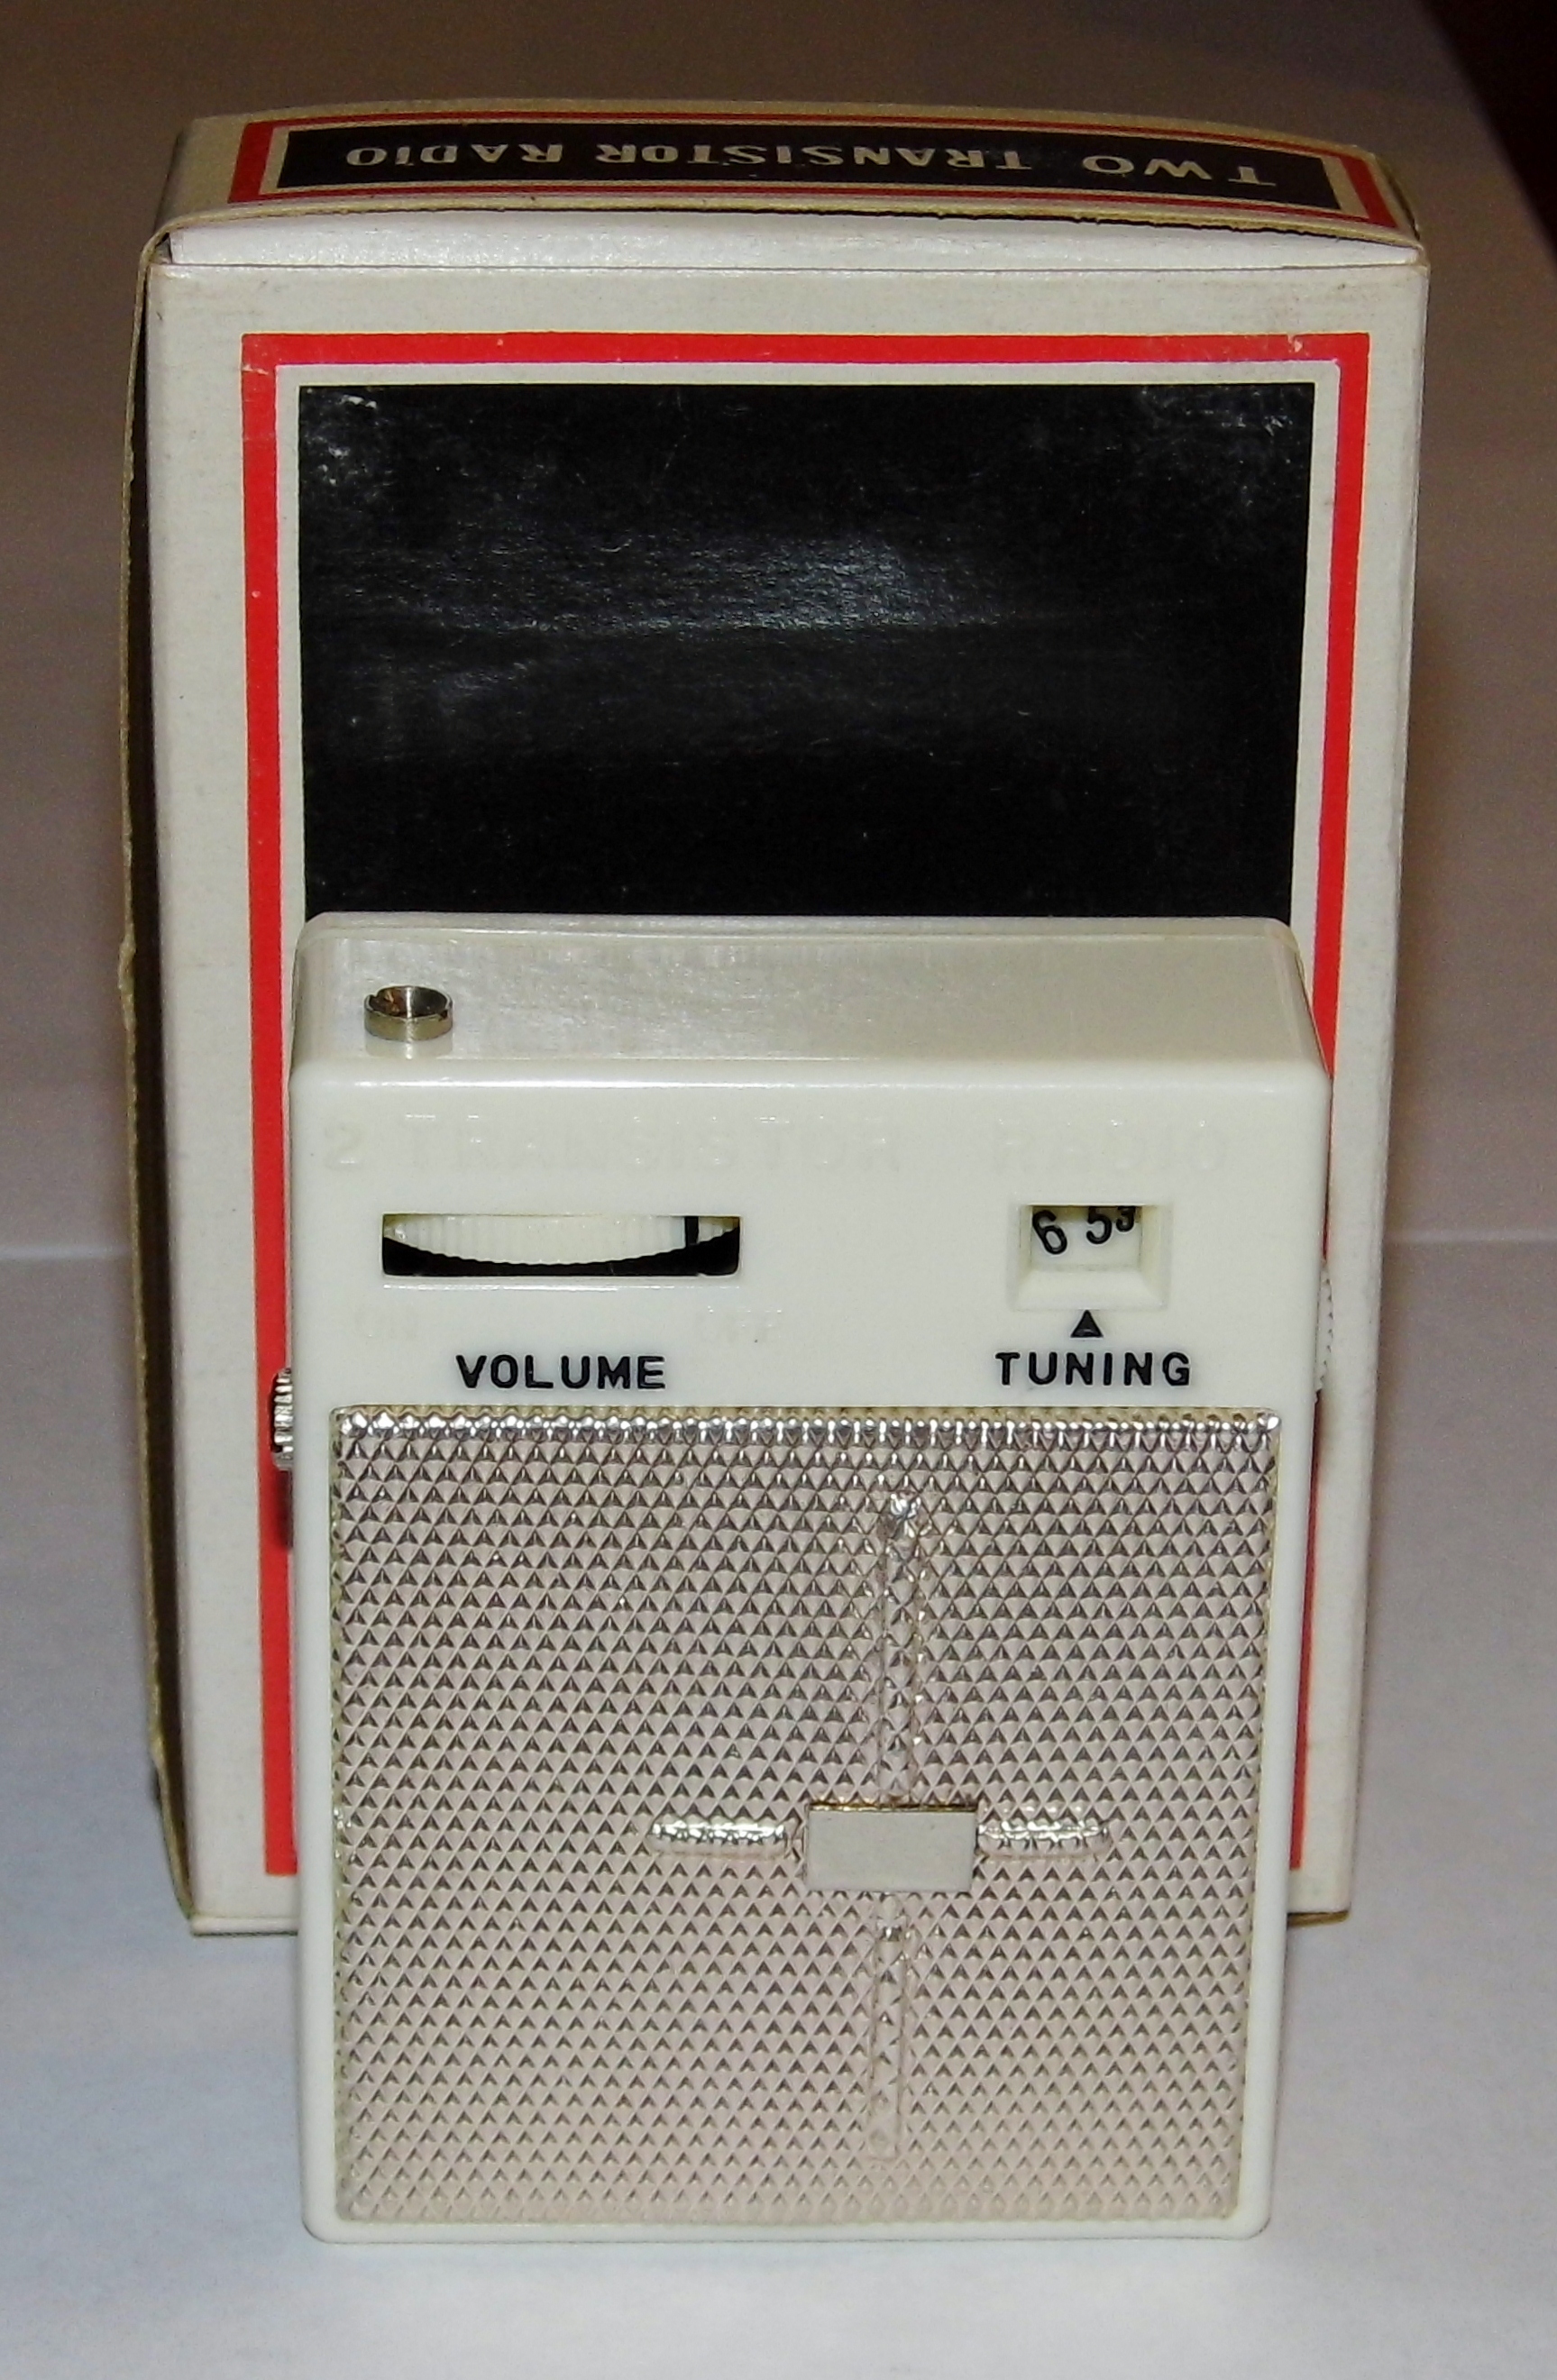 Vintage 2-Transistor Boy's Radio (No Model Number or Manufacturer Name), Made in Japan (8439985320)